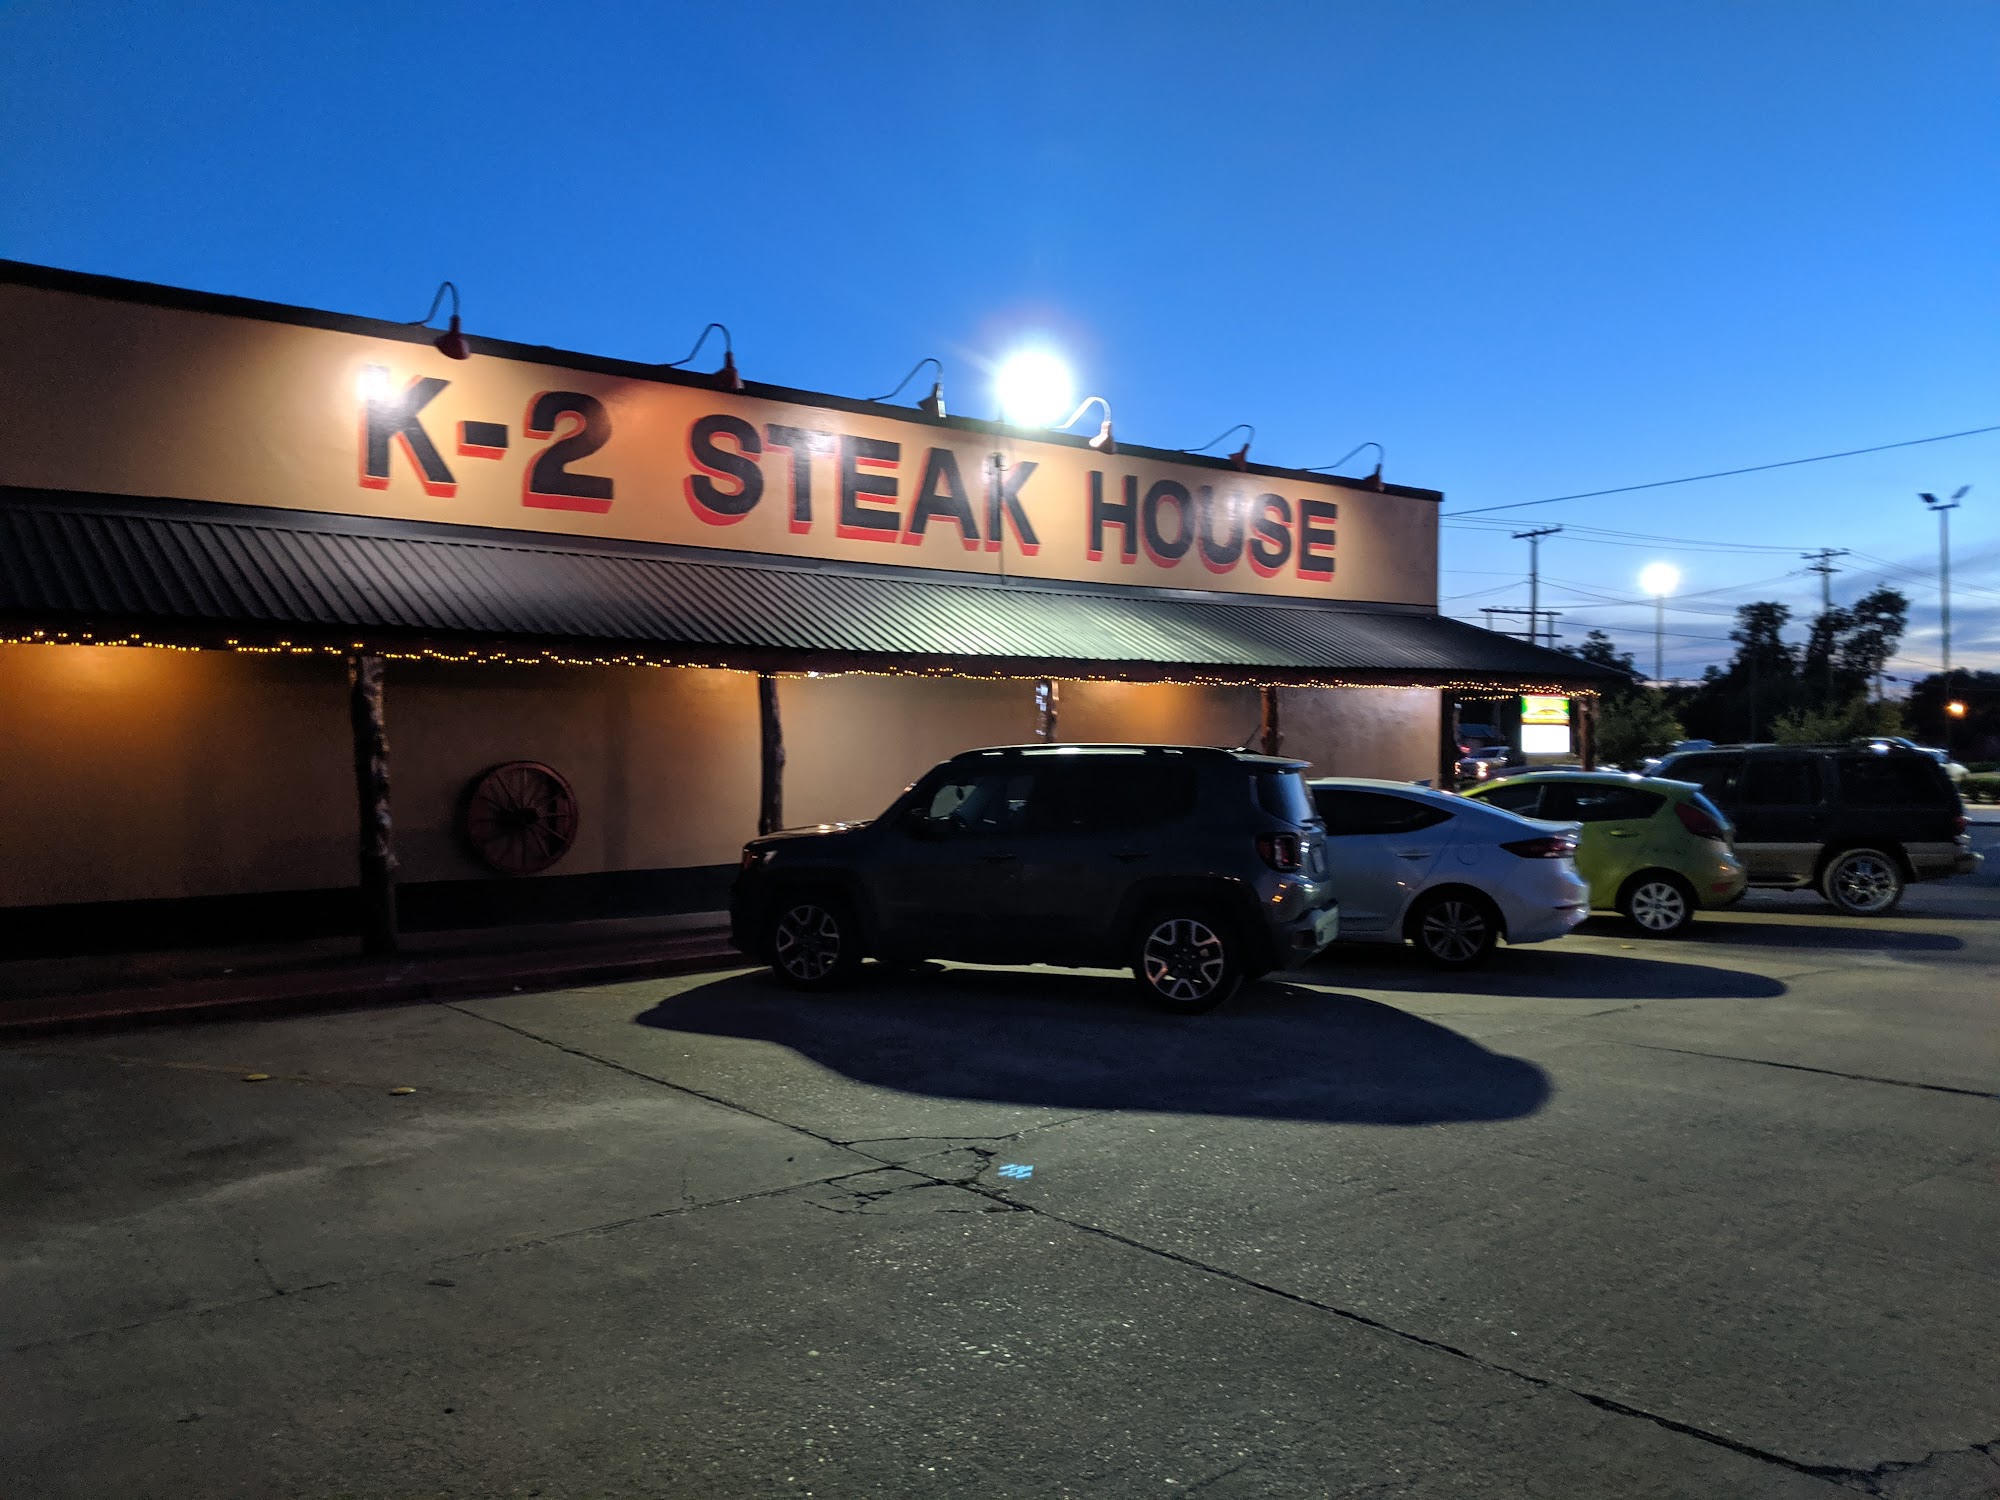 K-2 Steak House